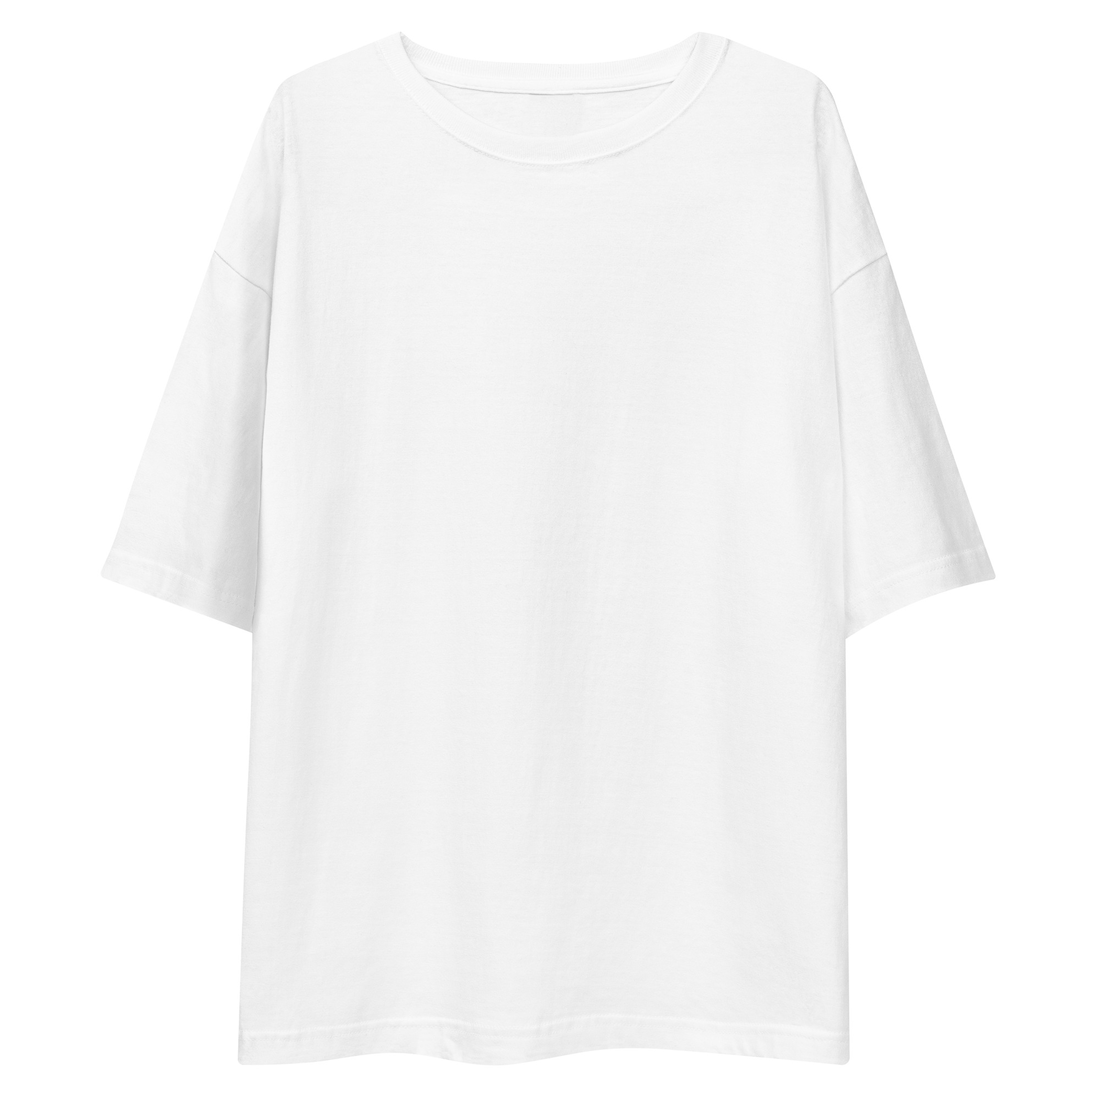 Camiseta Blanca Oversize - Elegancia y calidad en nuestra insignia. Descubre la perfección del algodón premium importado. envíos a Guatemala